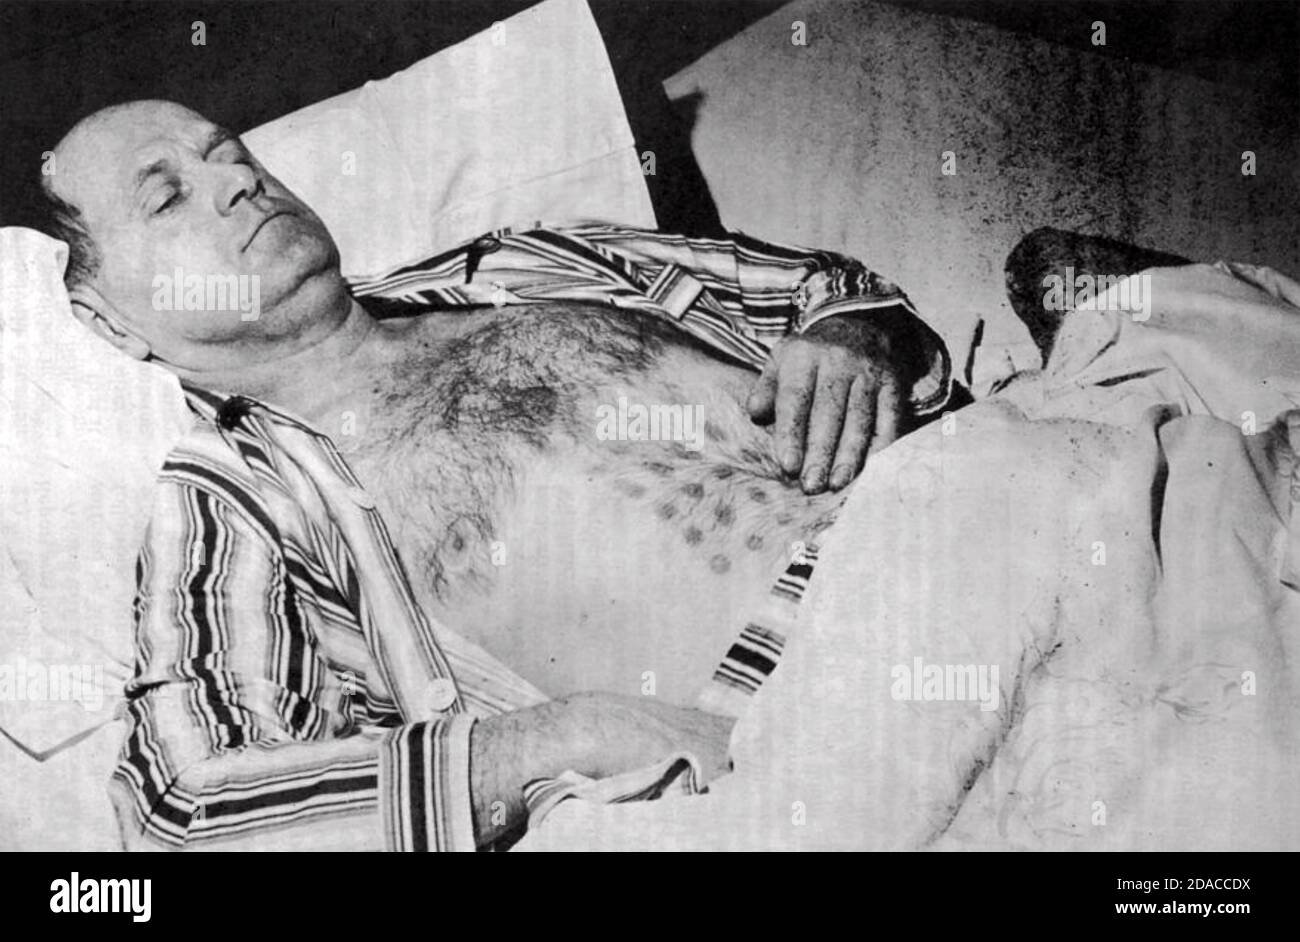 DIE FALCON LAKE VERANSTALTUNG Stefan Michalak nach seiner "Begegnung" mit einem UFO in Manitoba, Kanada, 20. Mai 1967 Stockfoto